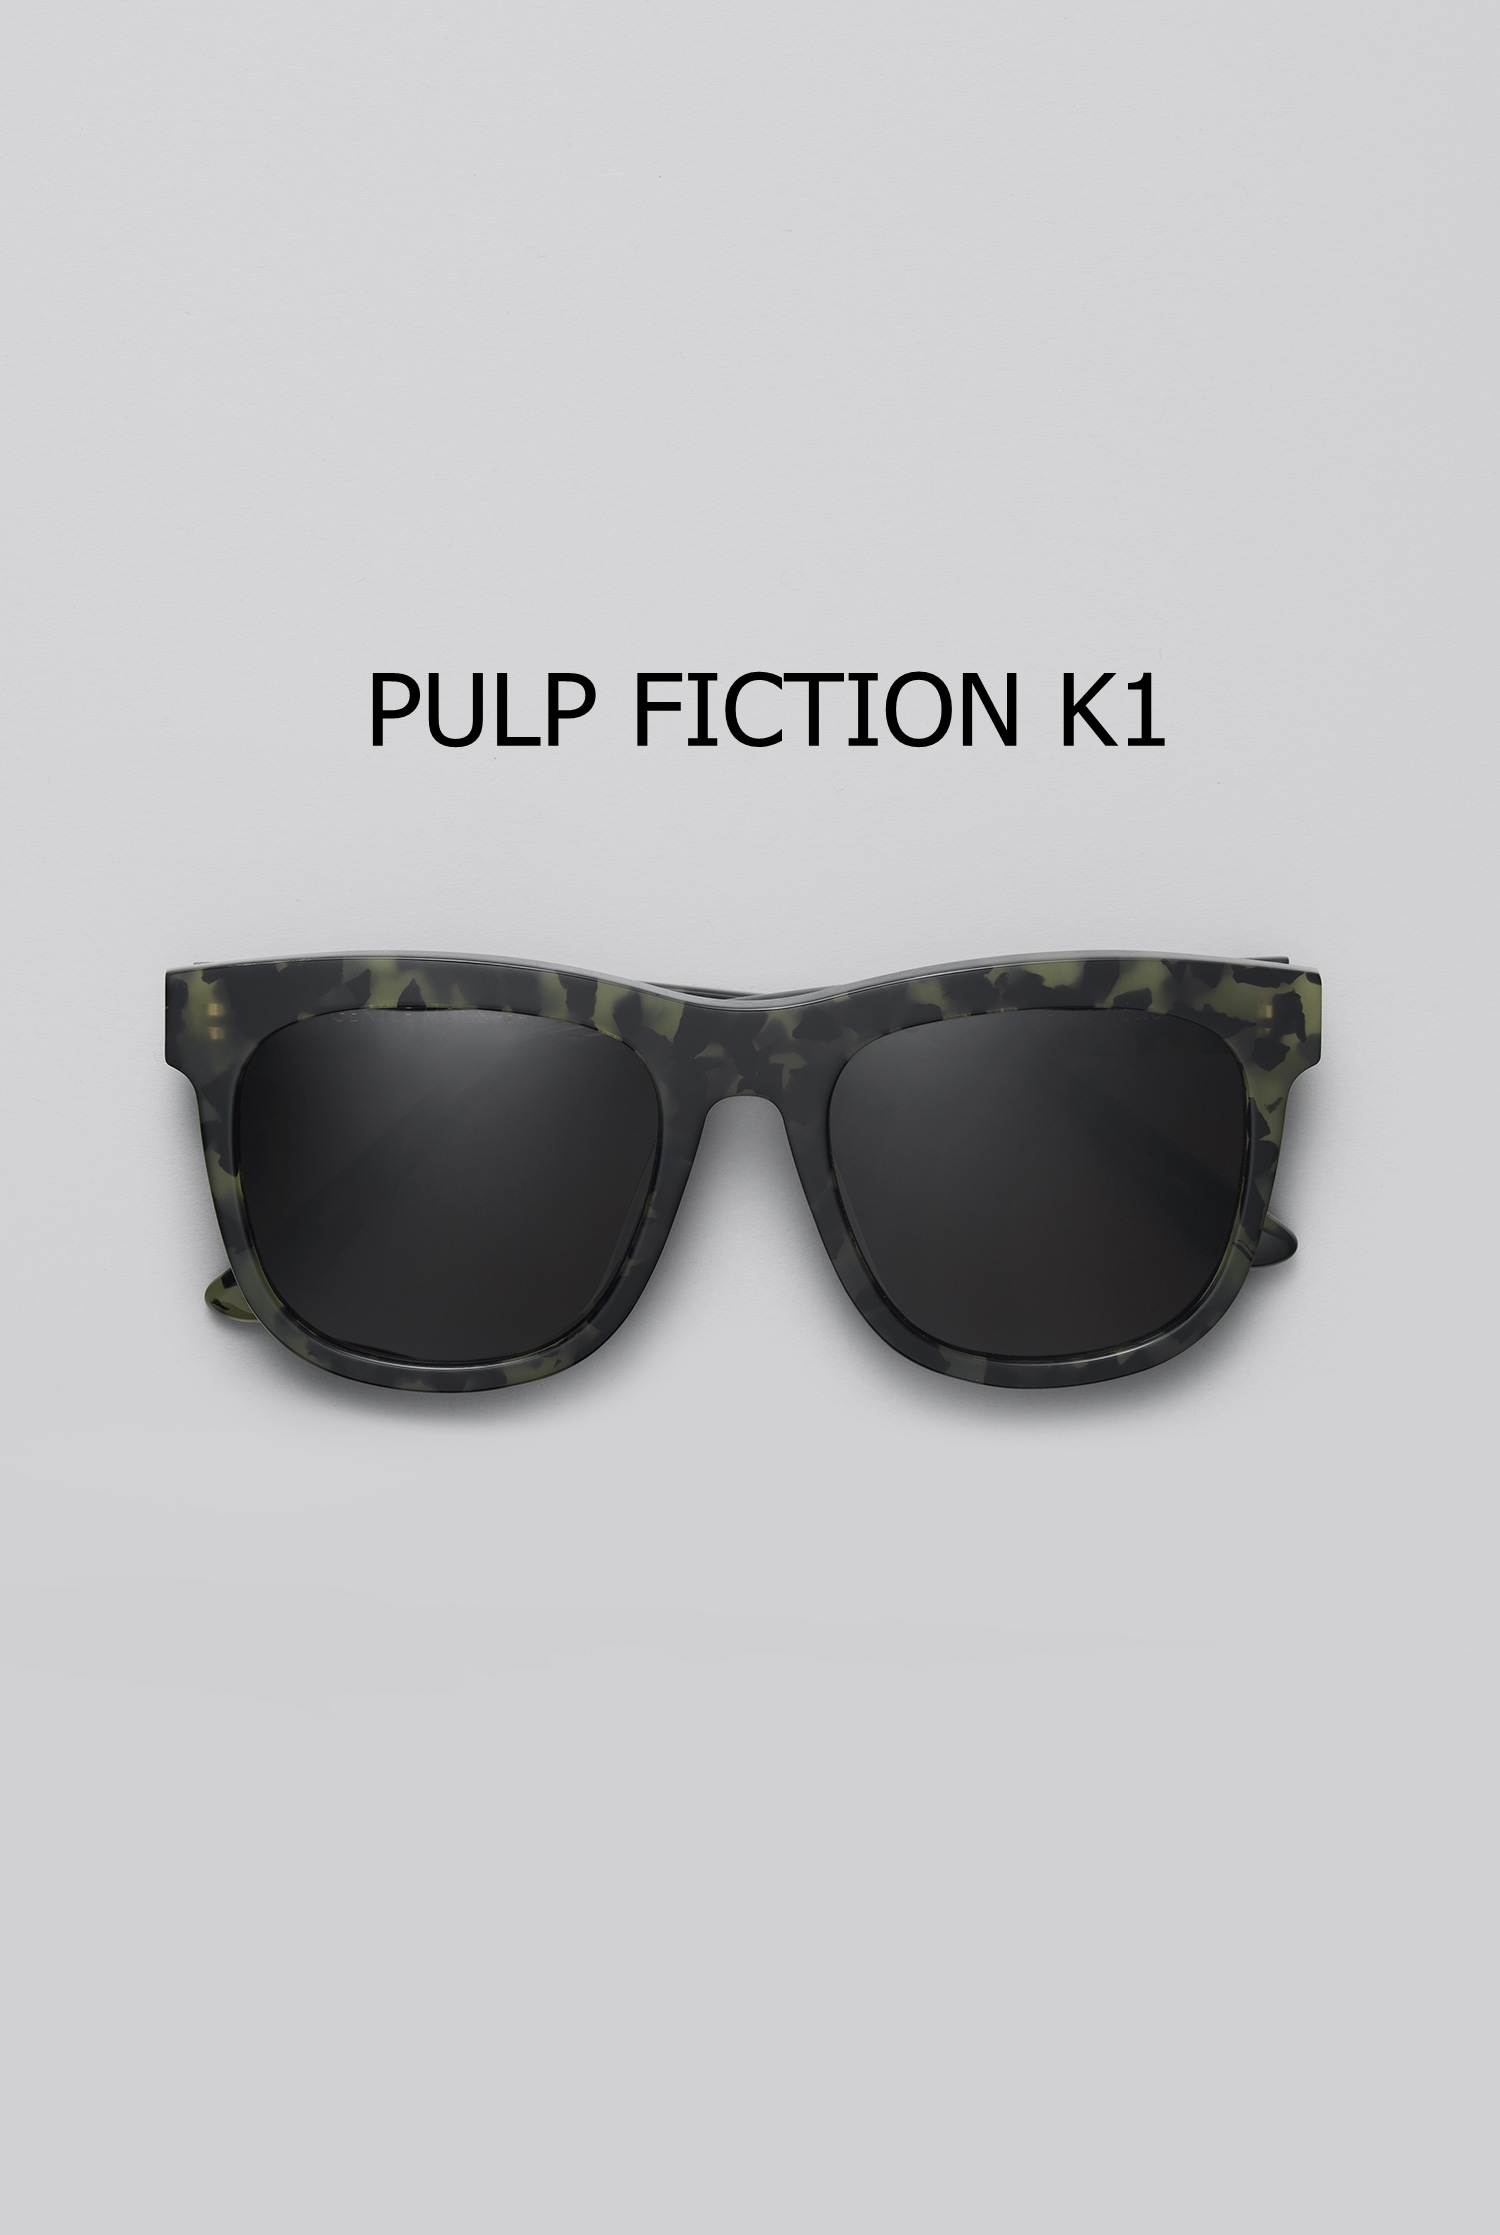 PULP FICTION K1 